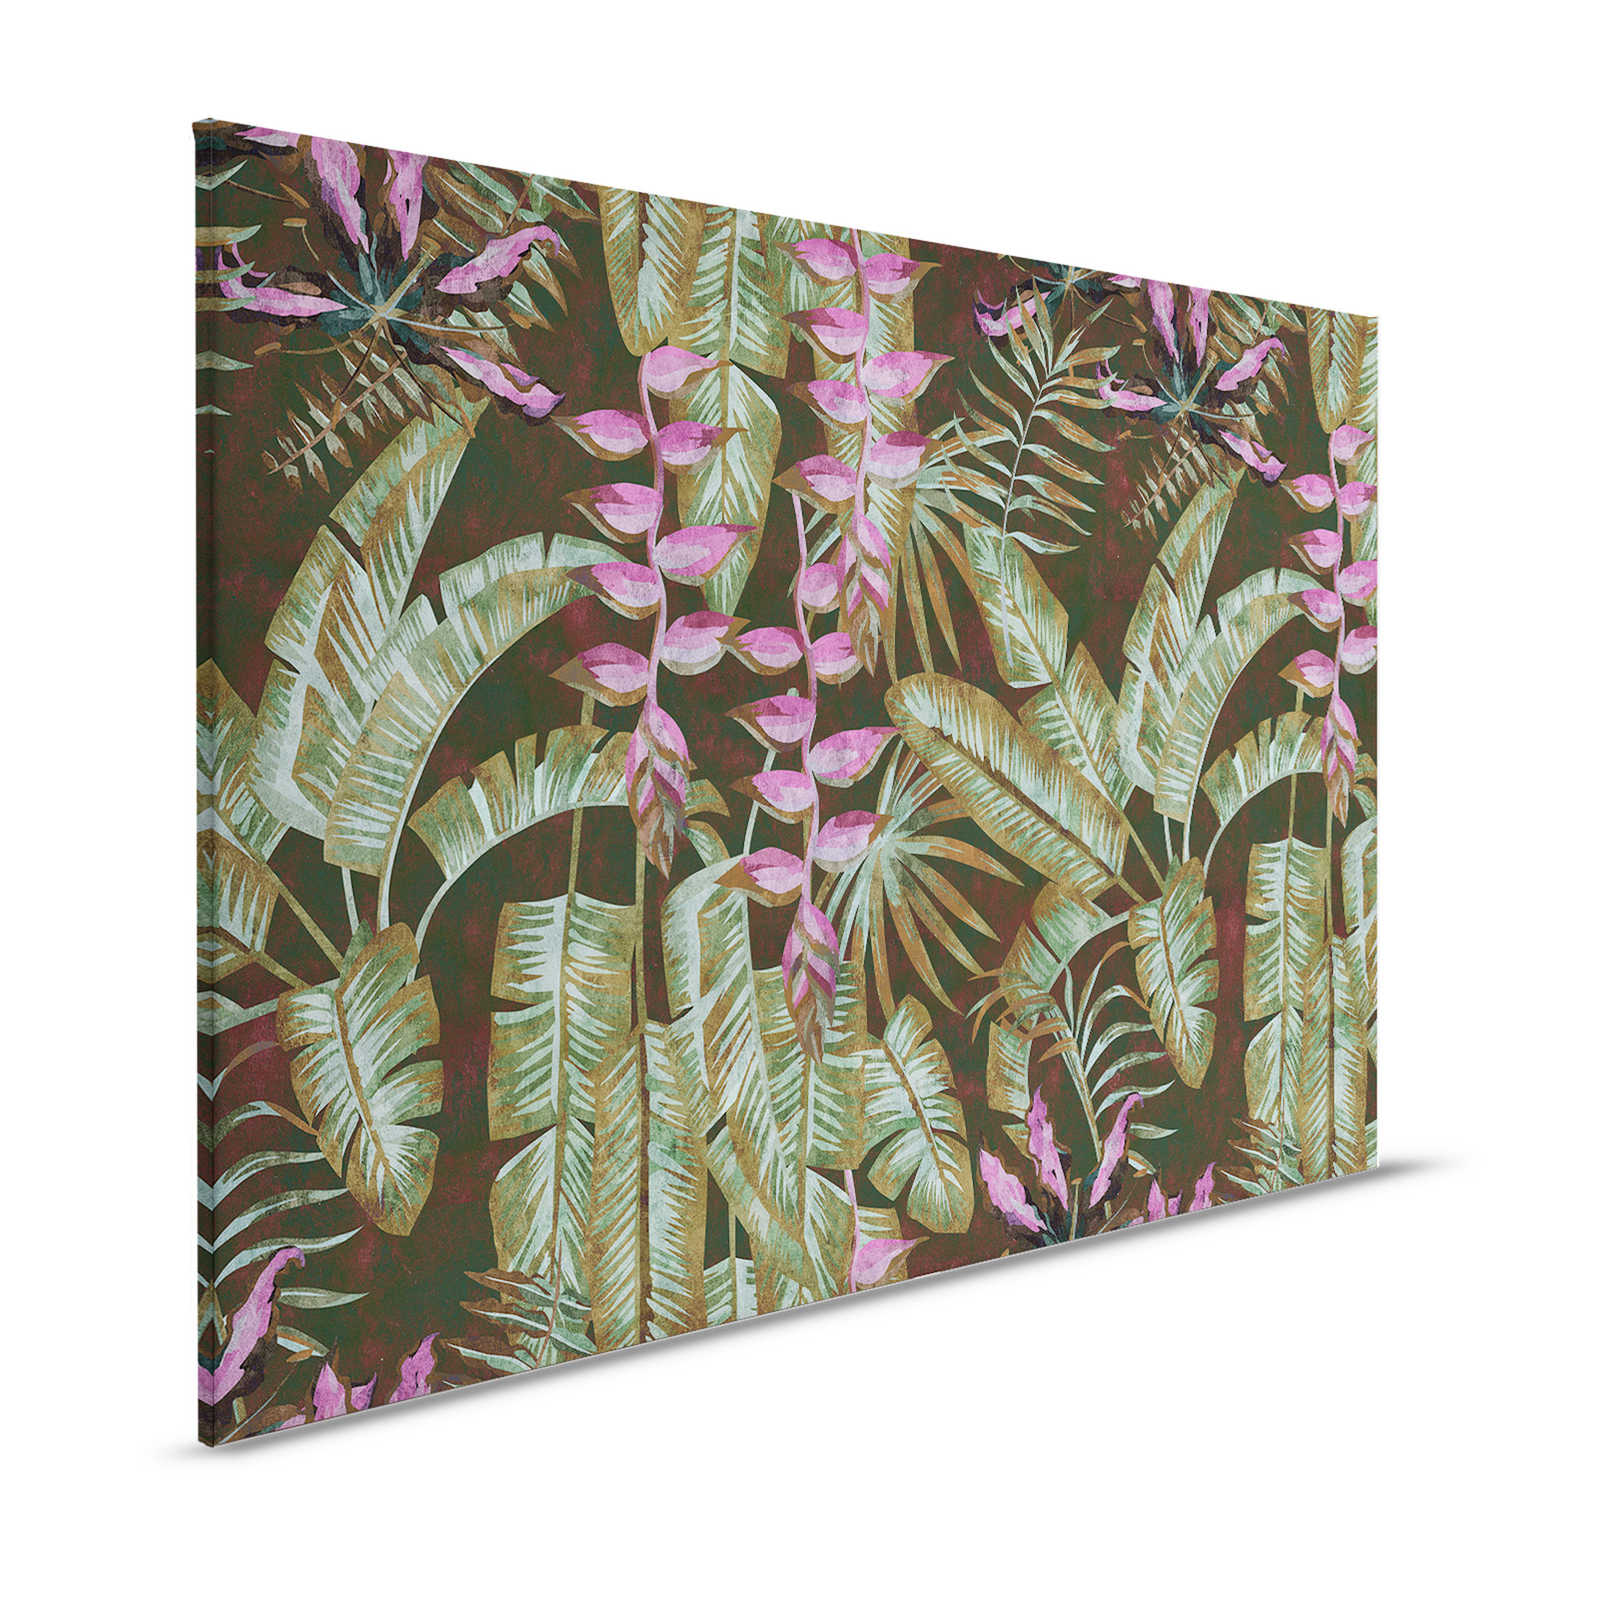 Tropicana 1 - Jungle Canvas Schilderij met Bananenbladeren & Varens - 1.20 m x 0.80 m
